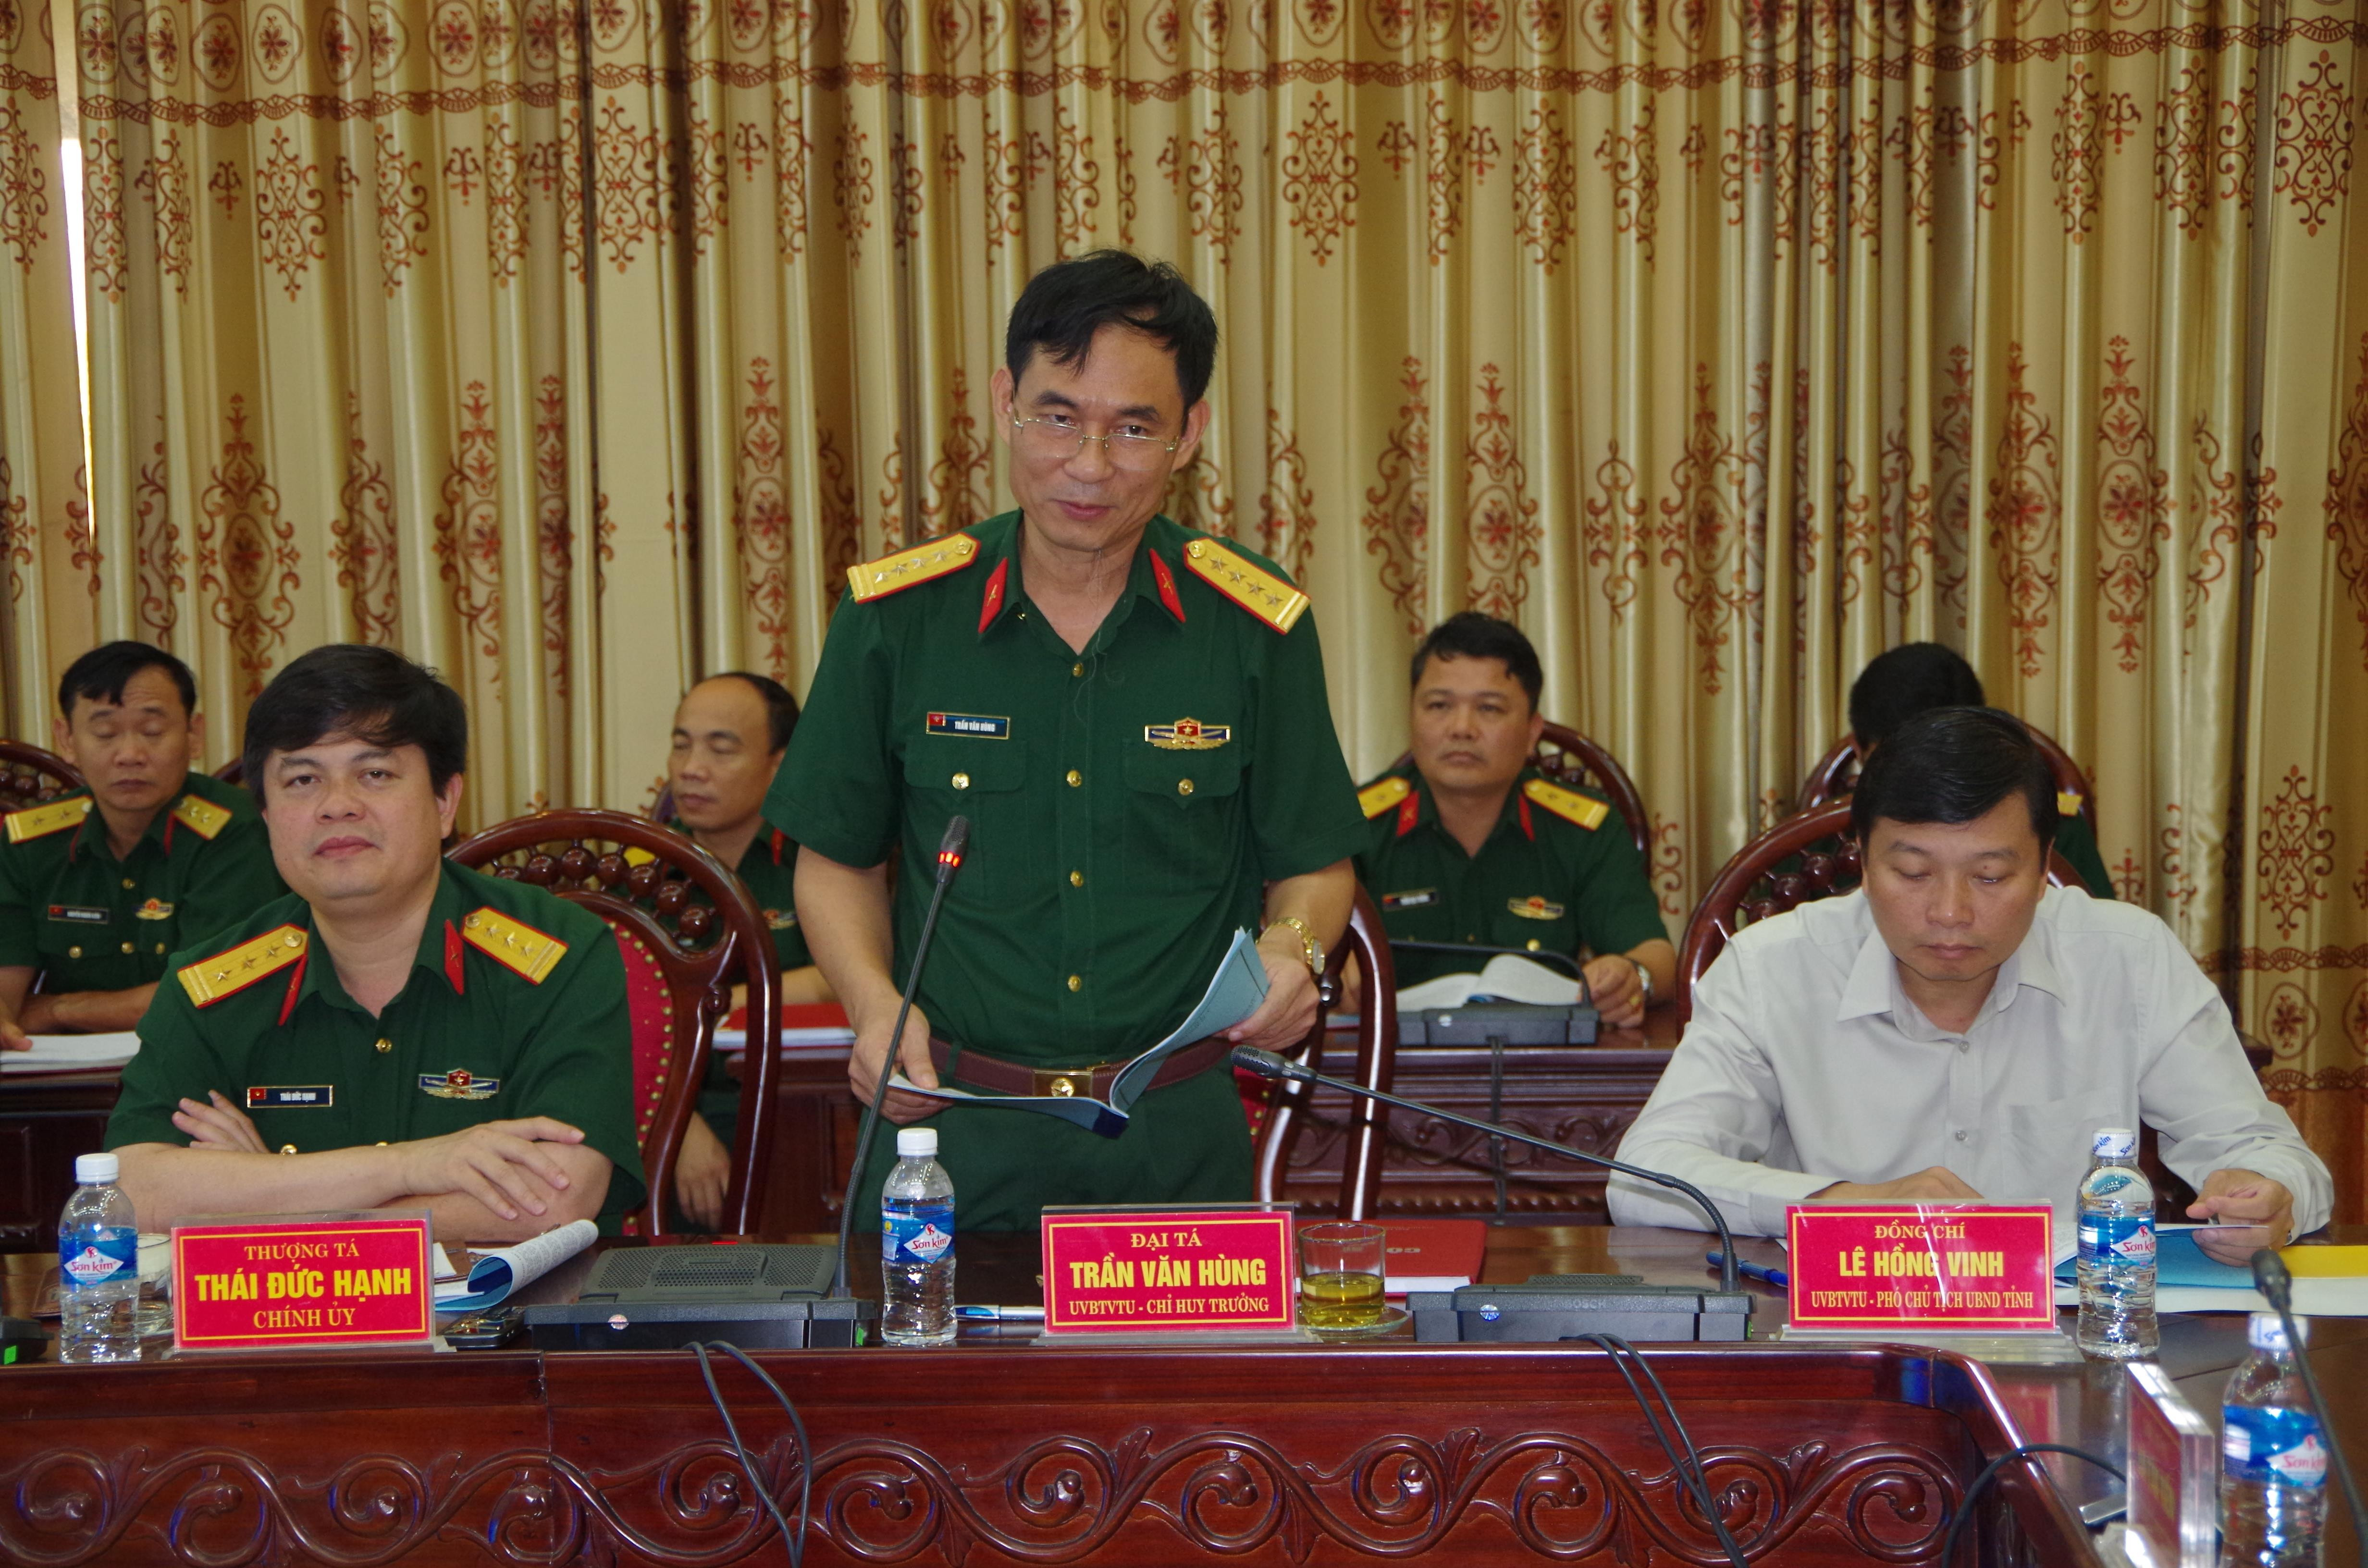 Đại tá Trần Văn Hùng, Ủy viên Ban thường vụ tỉnh ủy, Chỉ huy trưởng Bộ CHQS tỉnh báo cáo tình hình thực hiện nhiệm vụ 6 tháng đầu năm với đoàn kiểm tra